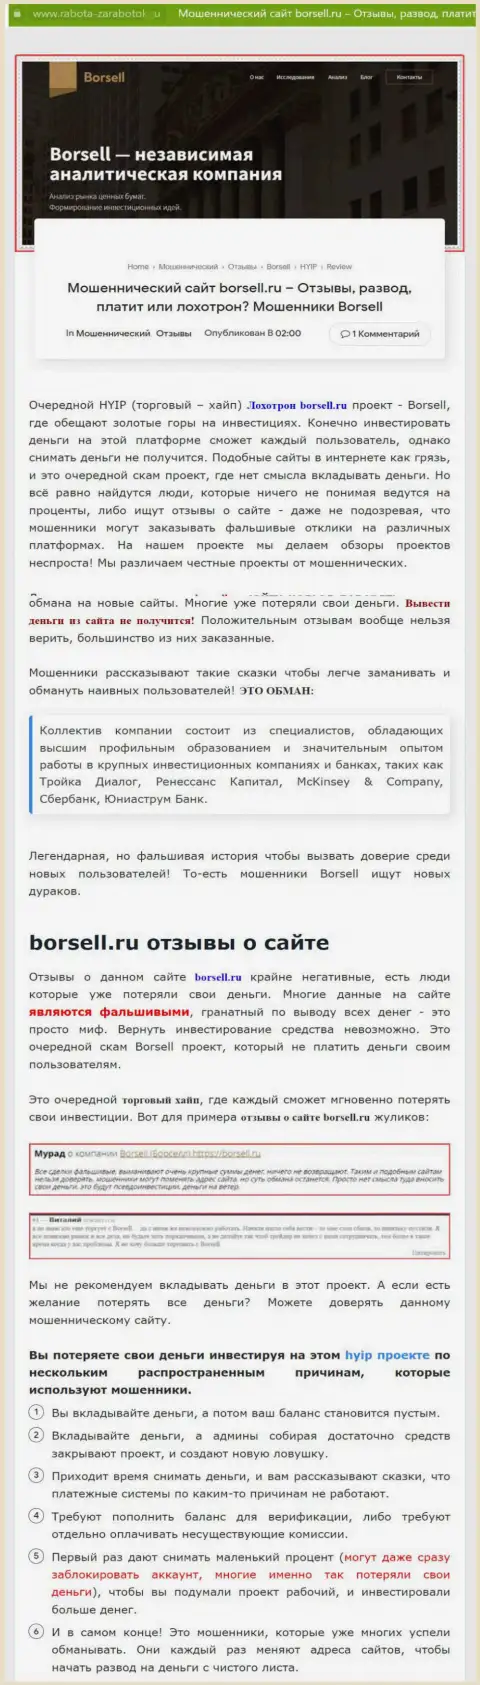 Внимательно изучите условия совместной работы Borsell Ru, в организации мошенничают (обзор мошеннических деяний)